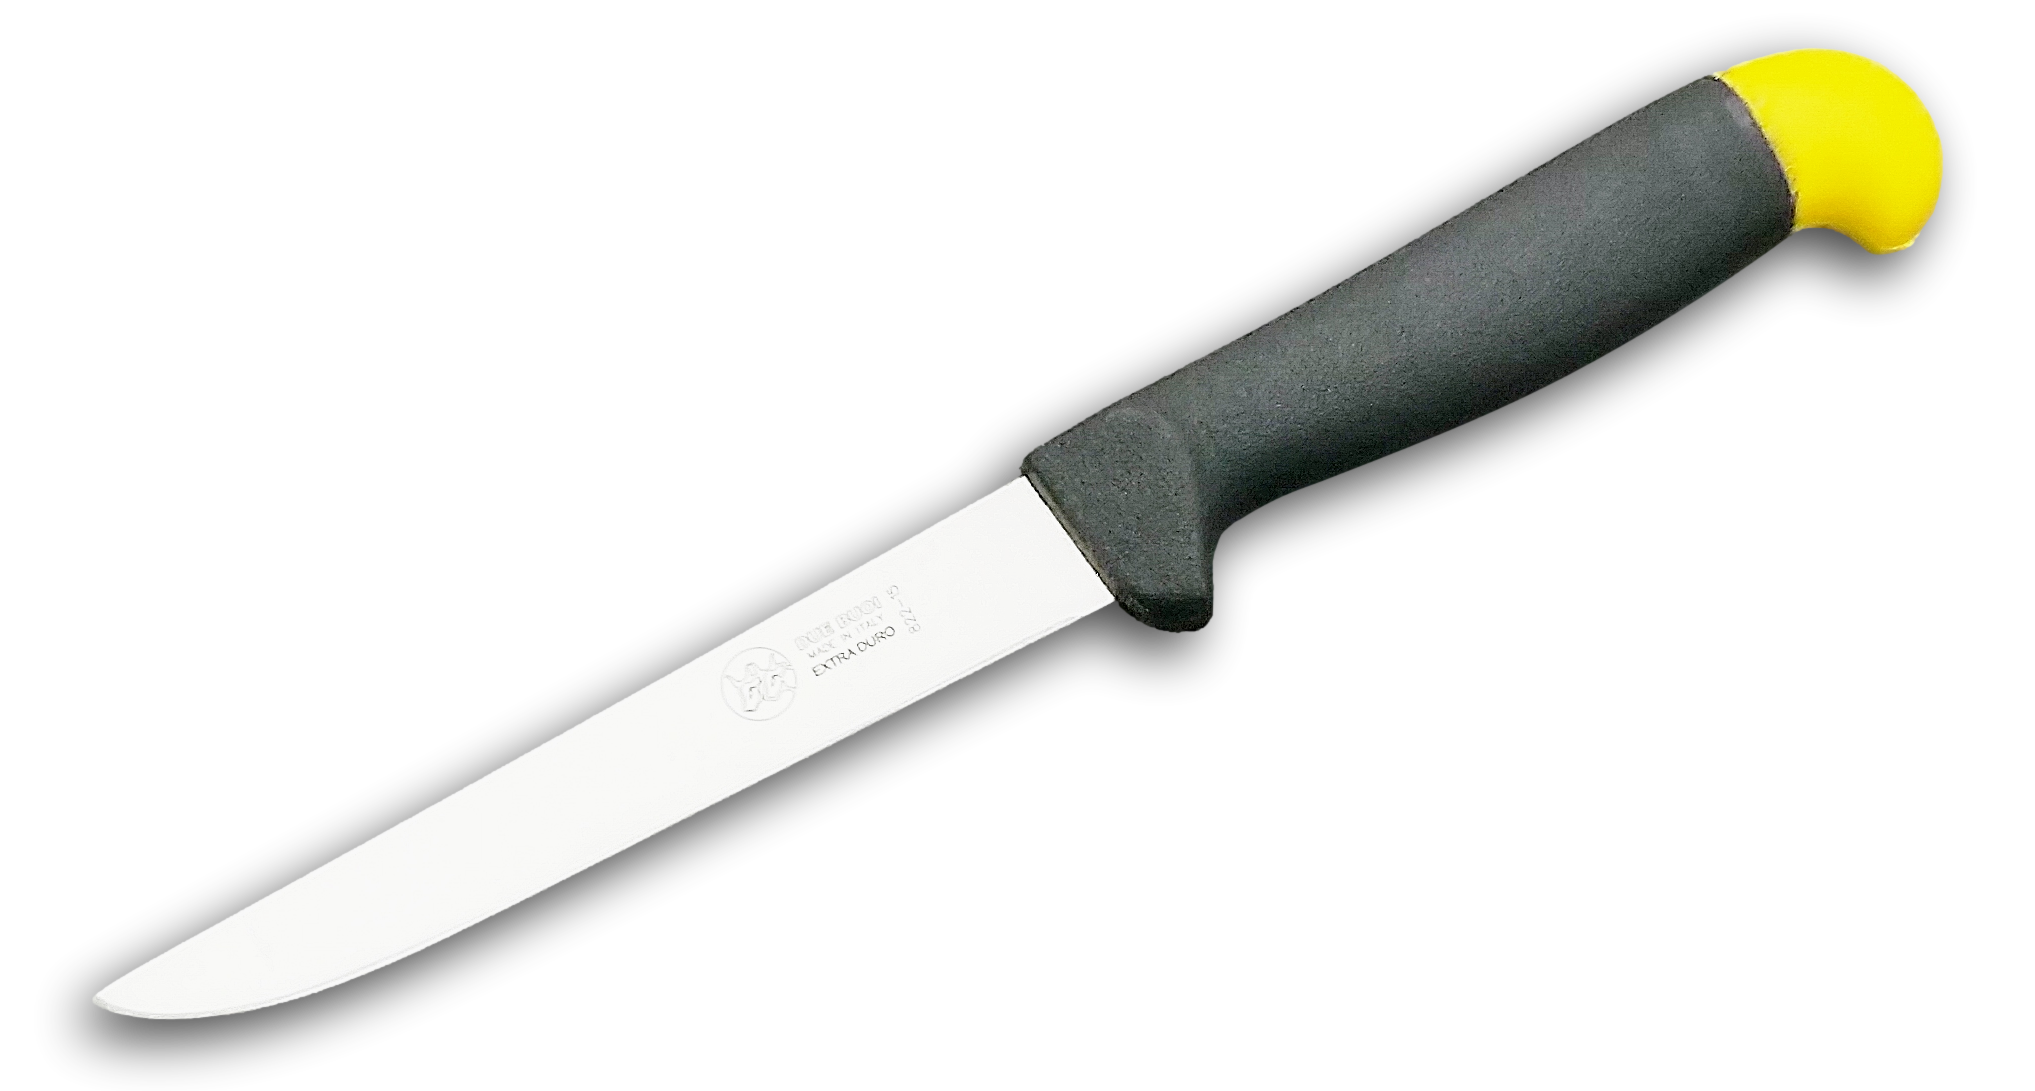 Coltello Pesce - 15 cm - DUE BUOI Knives